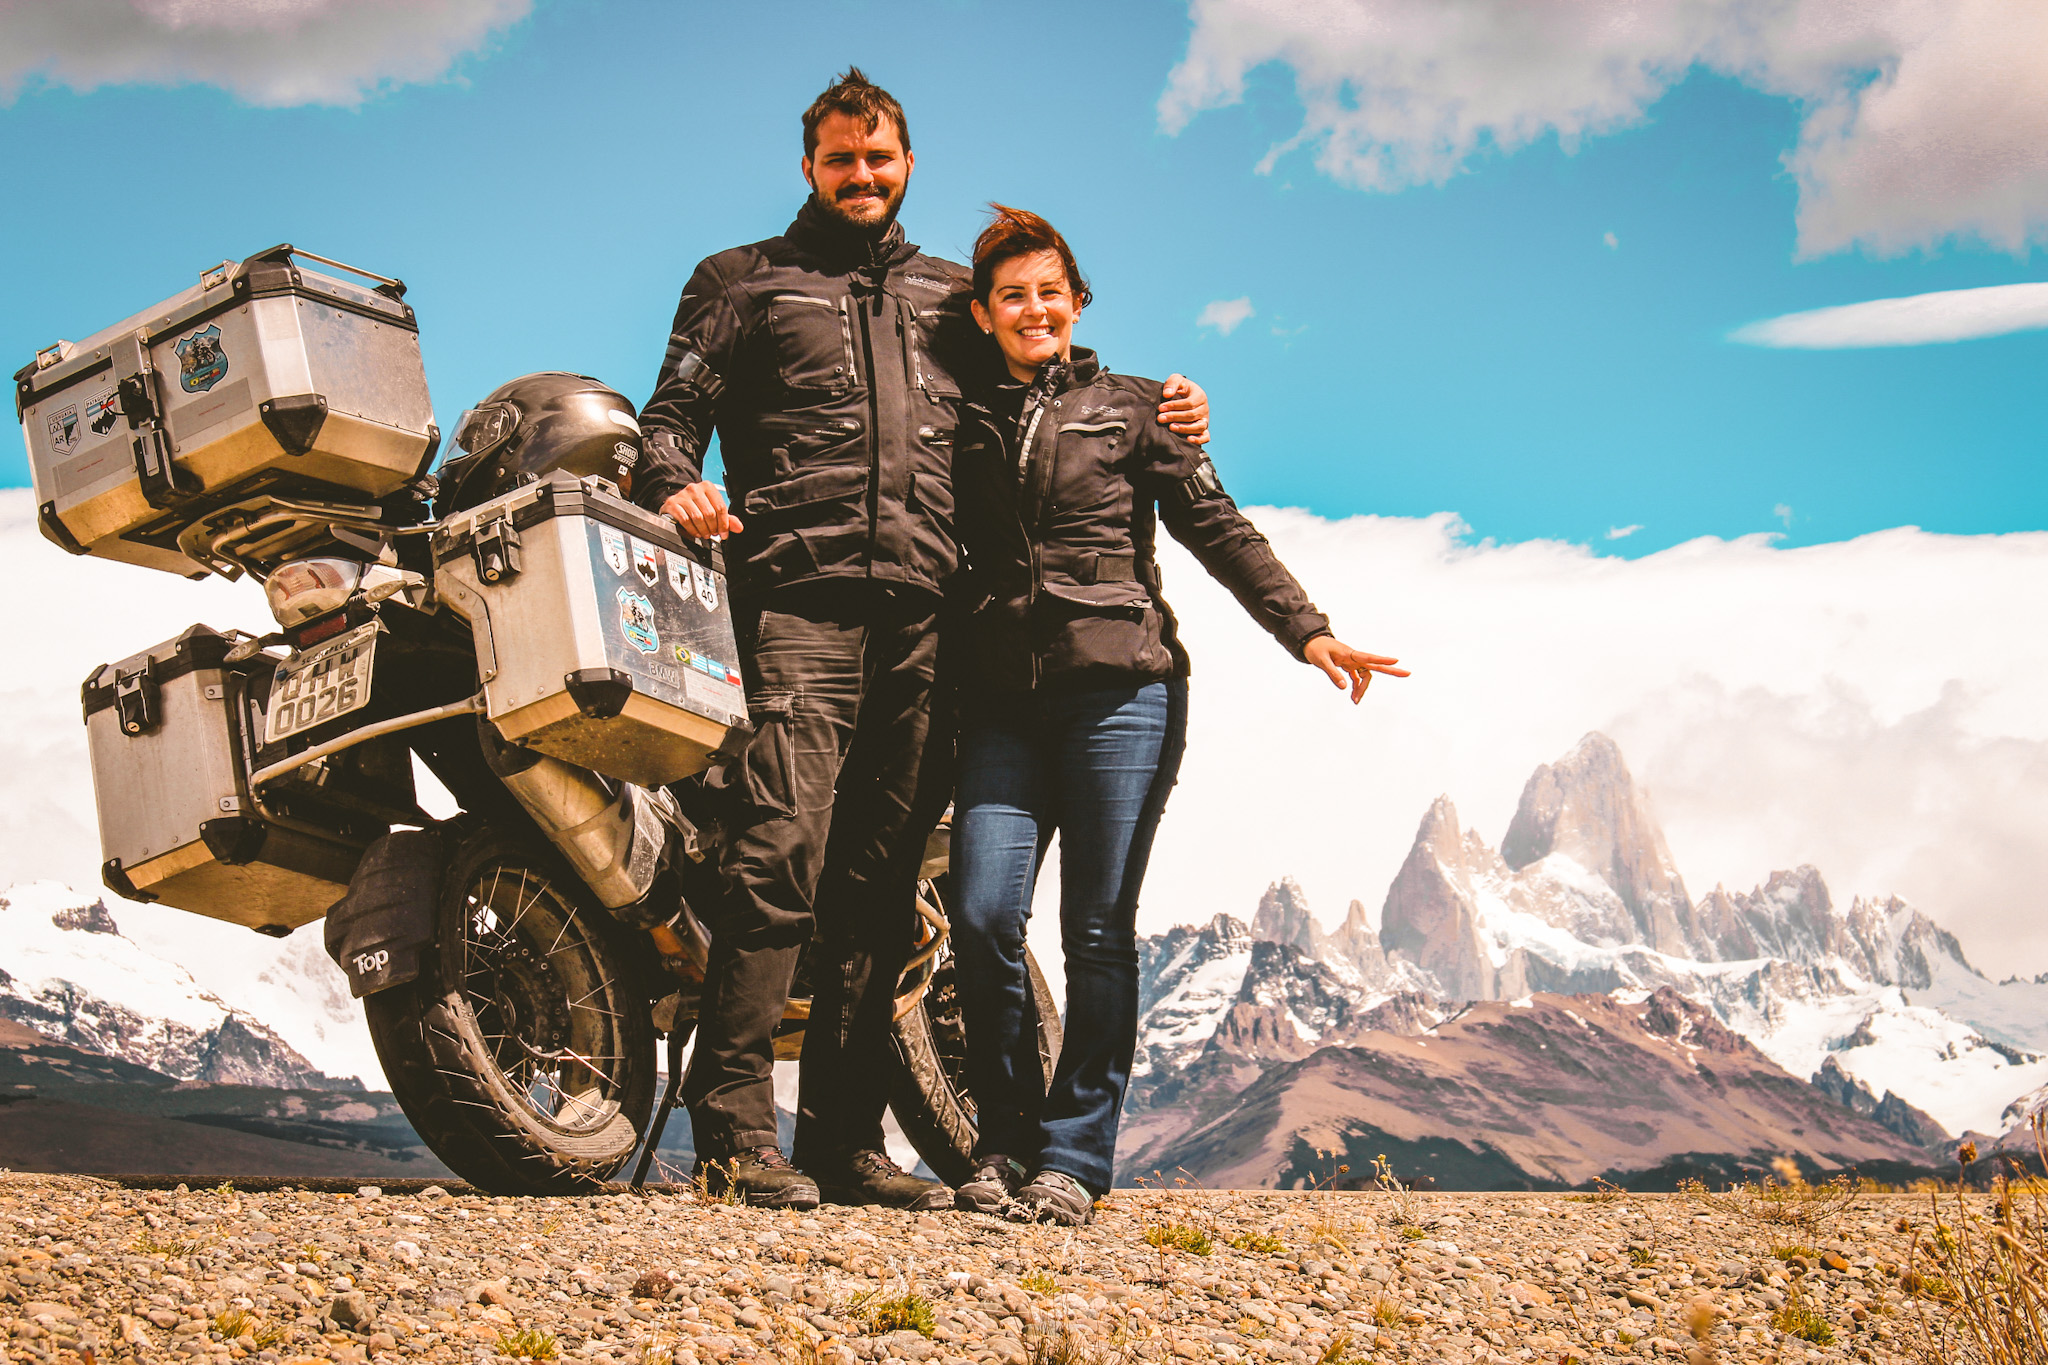 Uma boa idéia! Uma grande viagem!: Viagem de moto pela América do